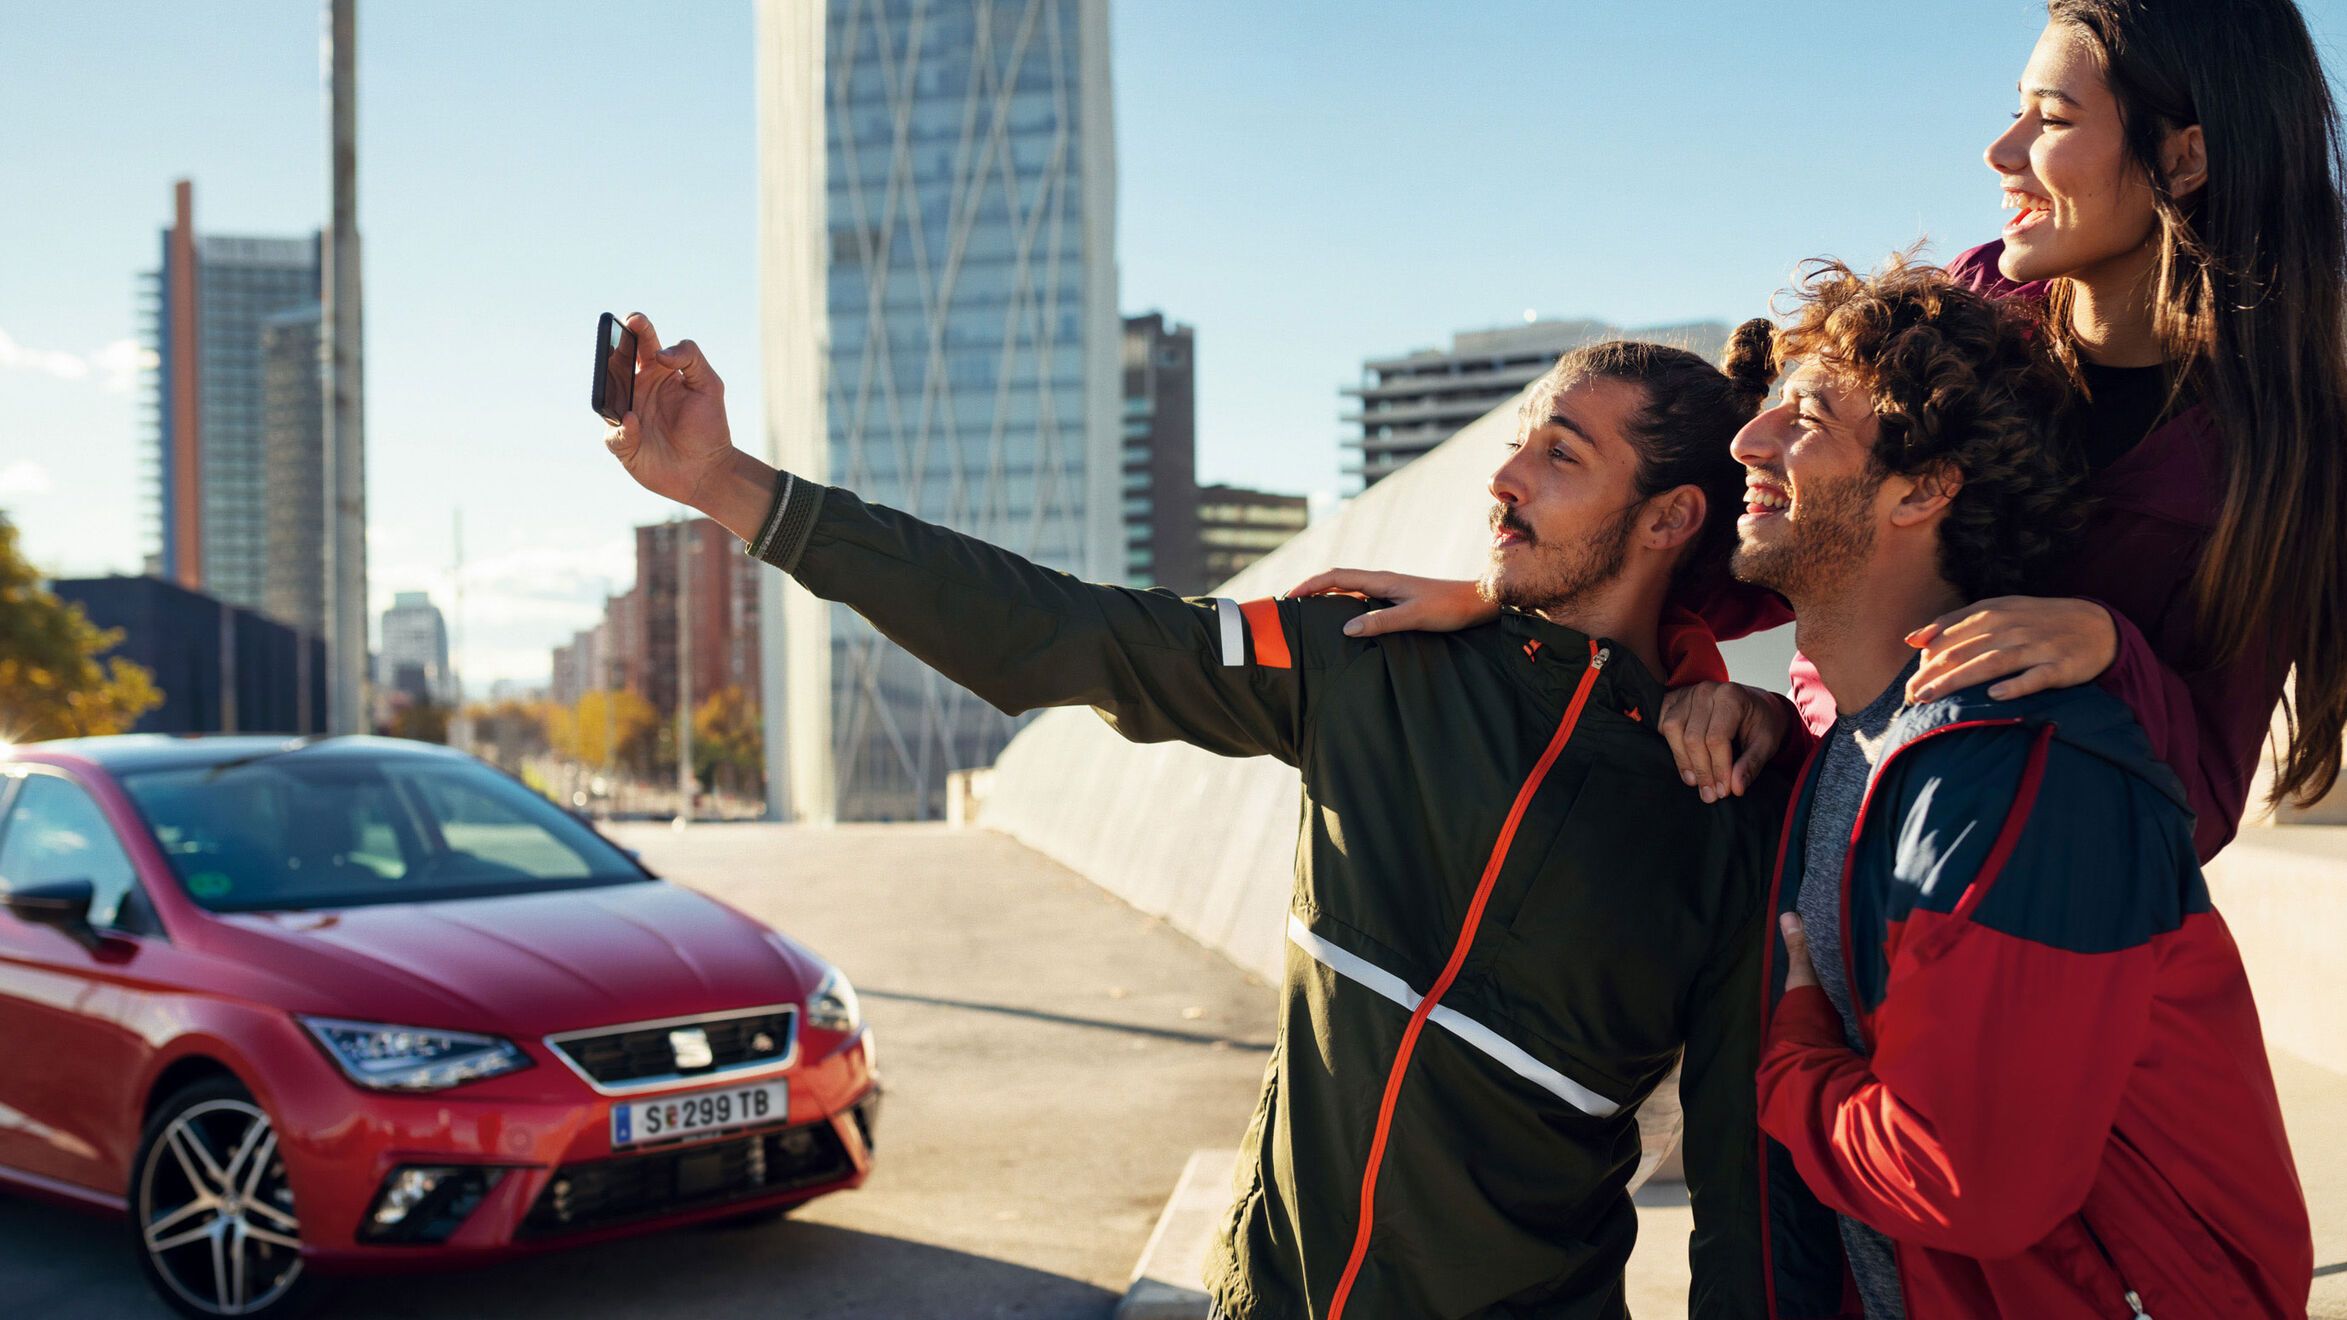 Drei Personen machen gerade ein Selfie. Im Hintergrund ist ein roter SEAT zu sehen.